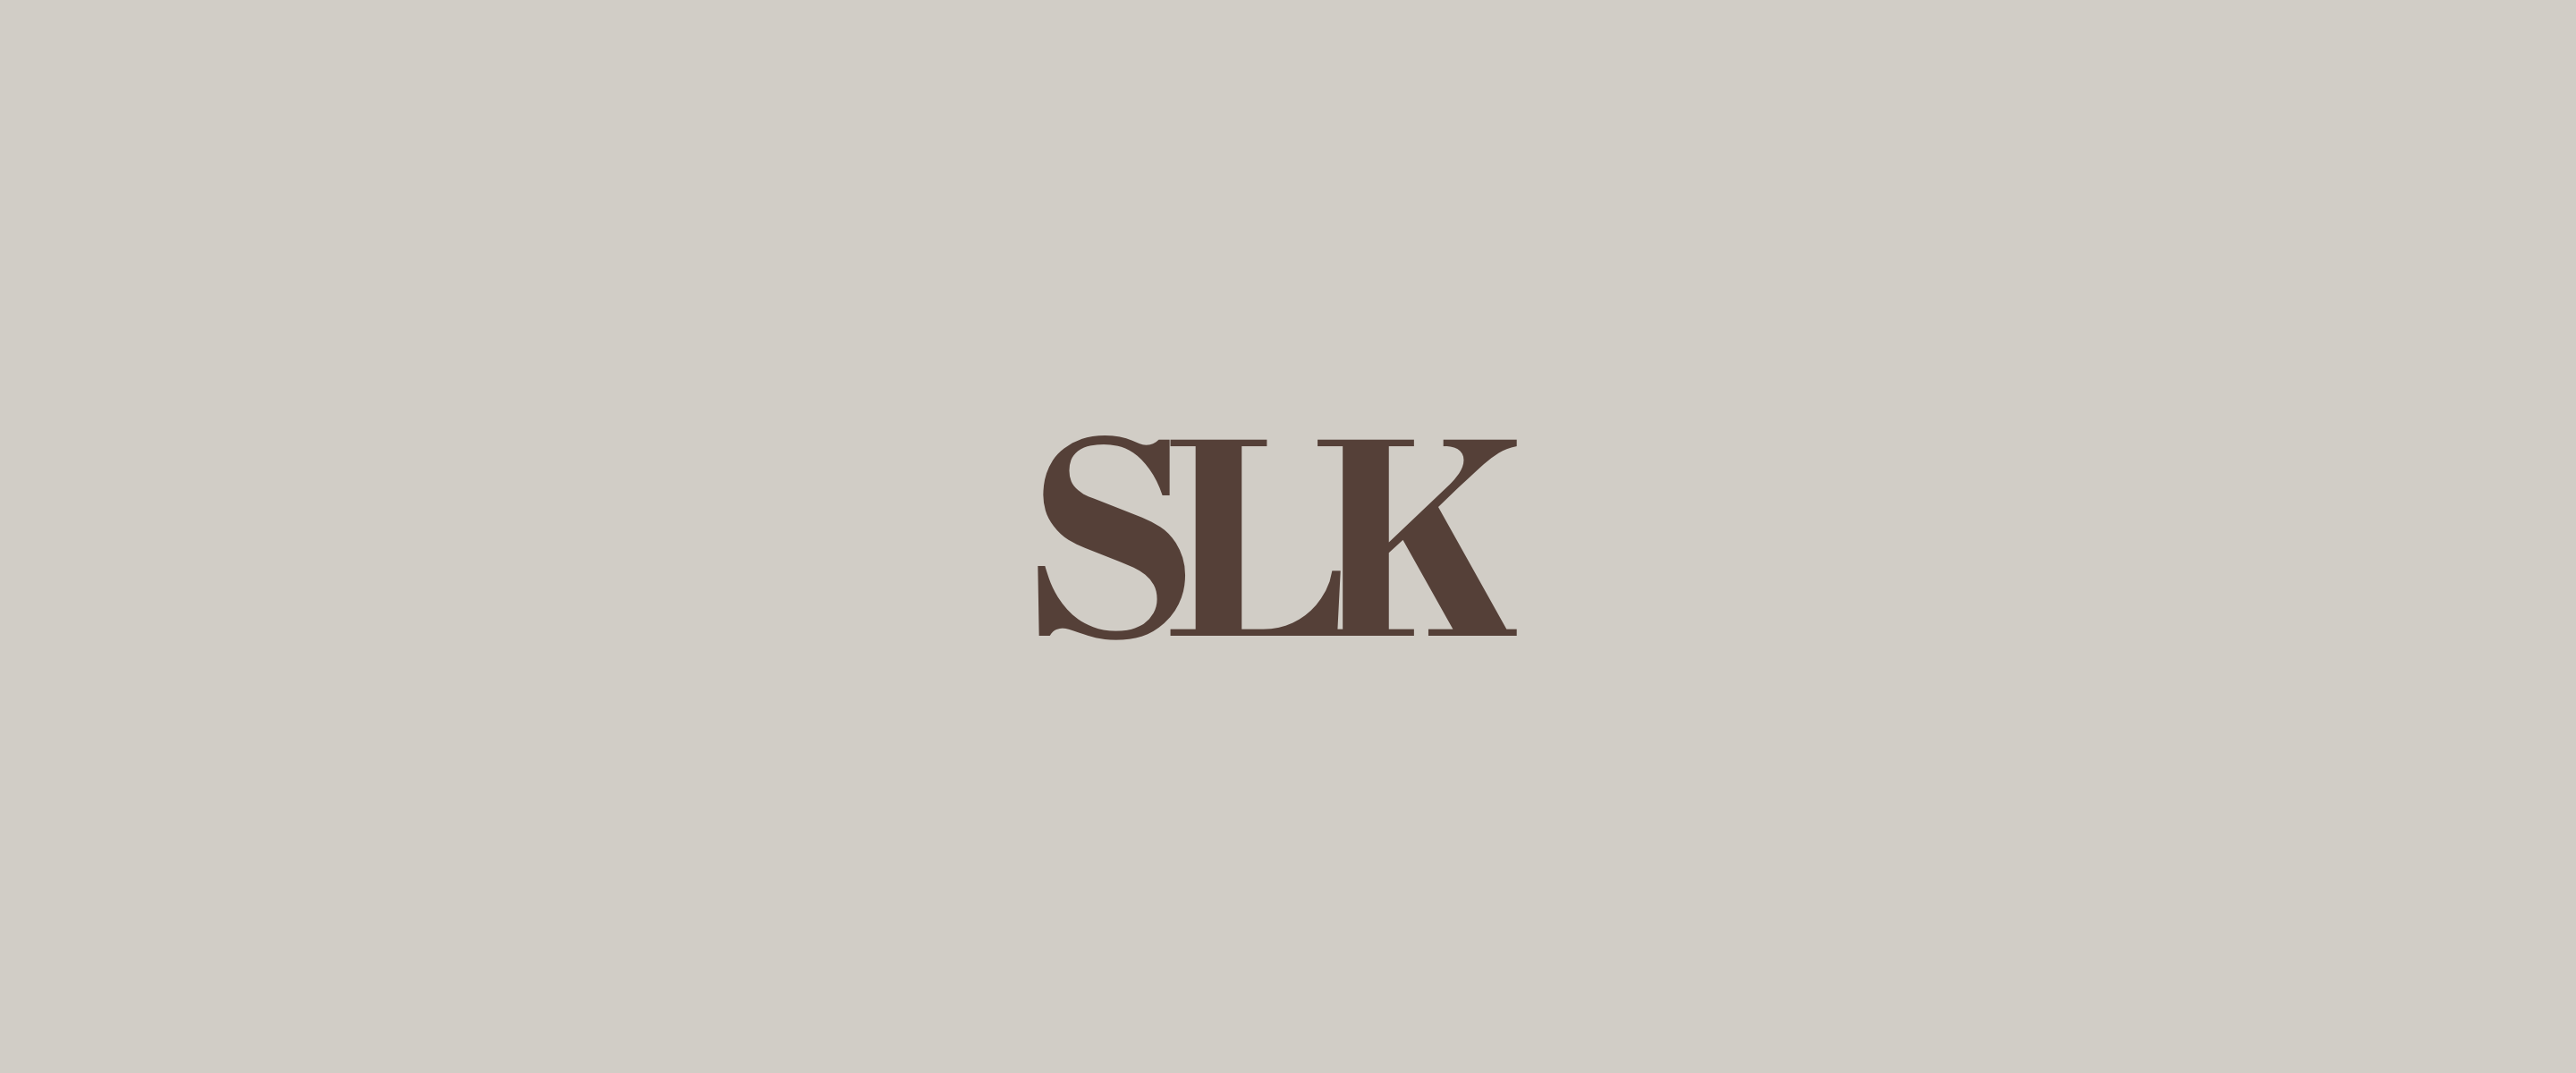 SLK Bleach Expert logo